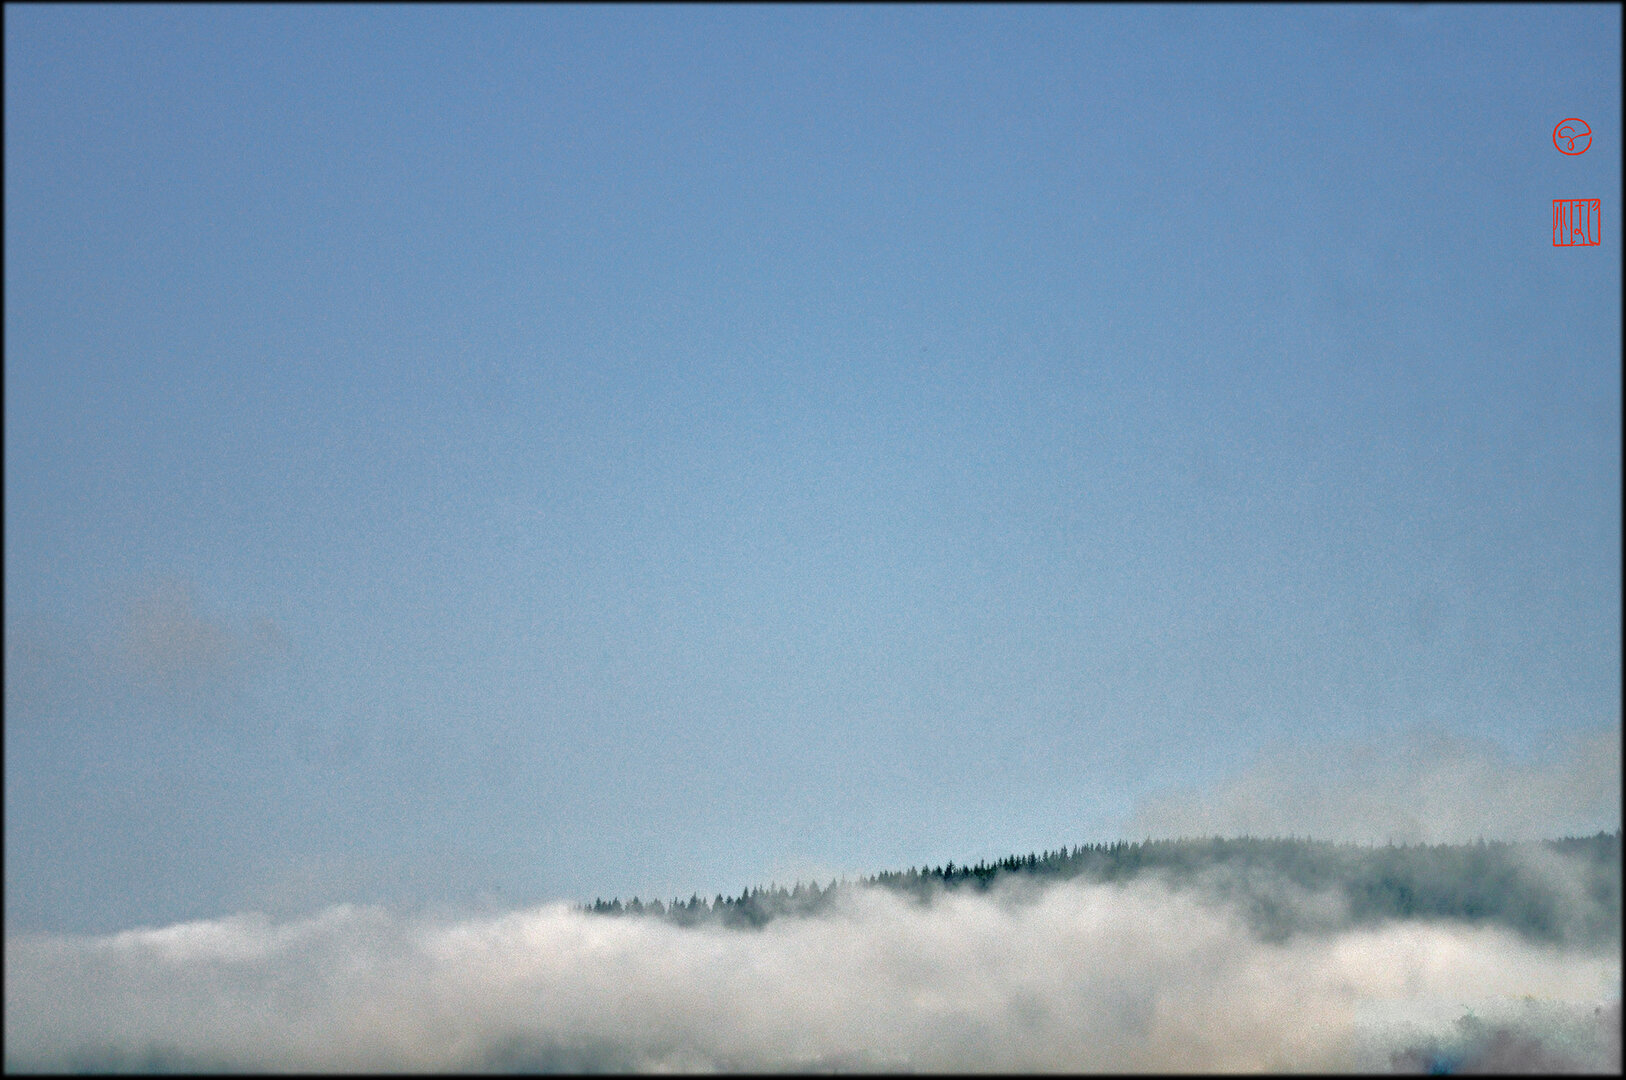 Format paysage - Sous un ciel bleu vif uniforme occupant les 3/4 de la hauteur de l'image, la fine ligne de crête d'une montagne garnie de sapins noirs émerge des nuages vaporeux en contrebas. En haut à droite 2 hanko : G et, au dessous Kohaji en hiragana